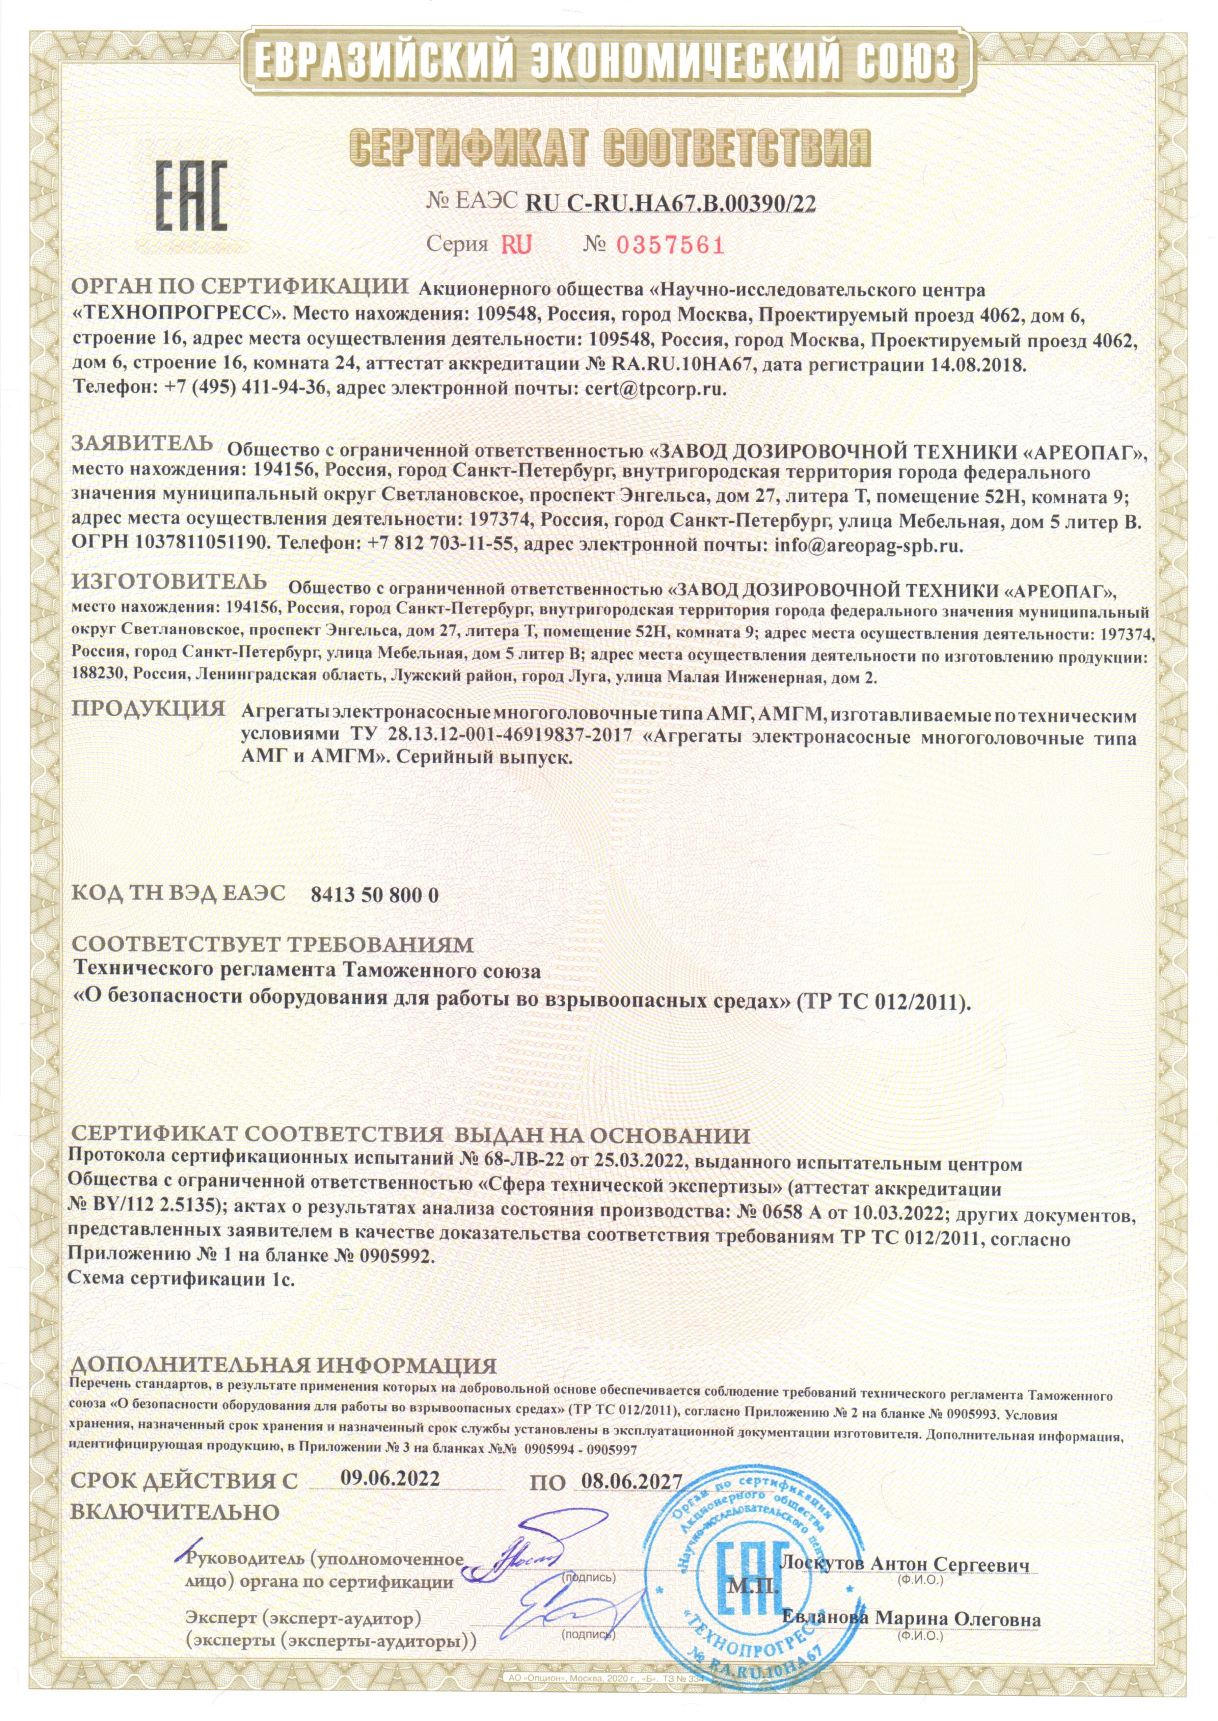 Сертификат соответствия № ЕАЭС RU C-RU.HA67.B.00390/22 на агрегаты электронасосные многоголовочного типа АМГ, АМГМ